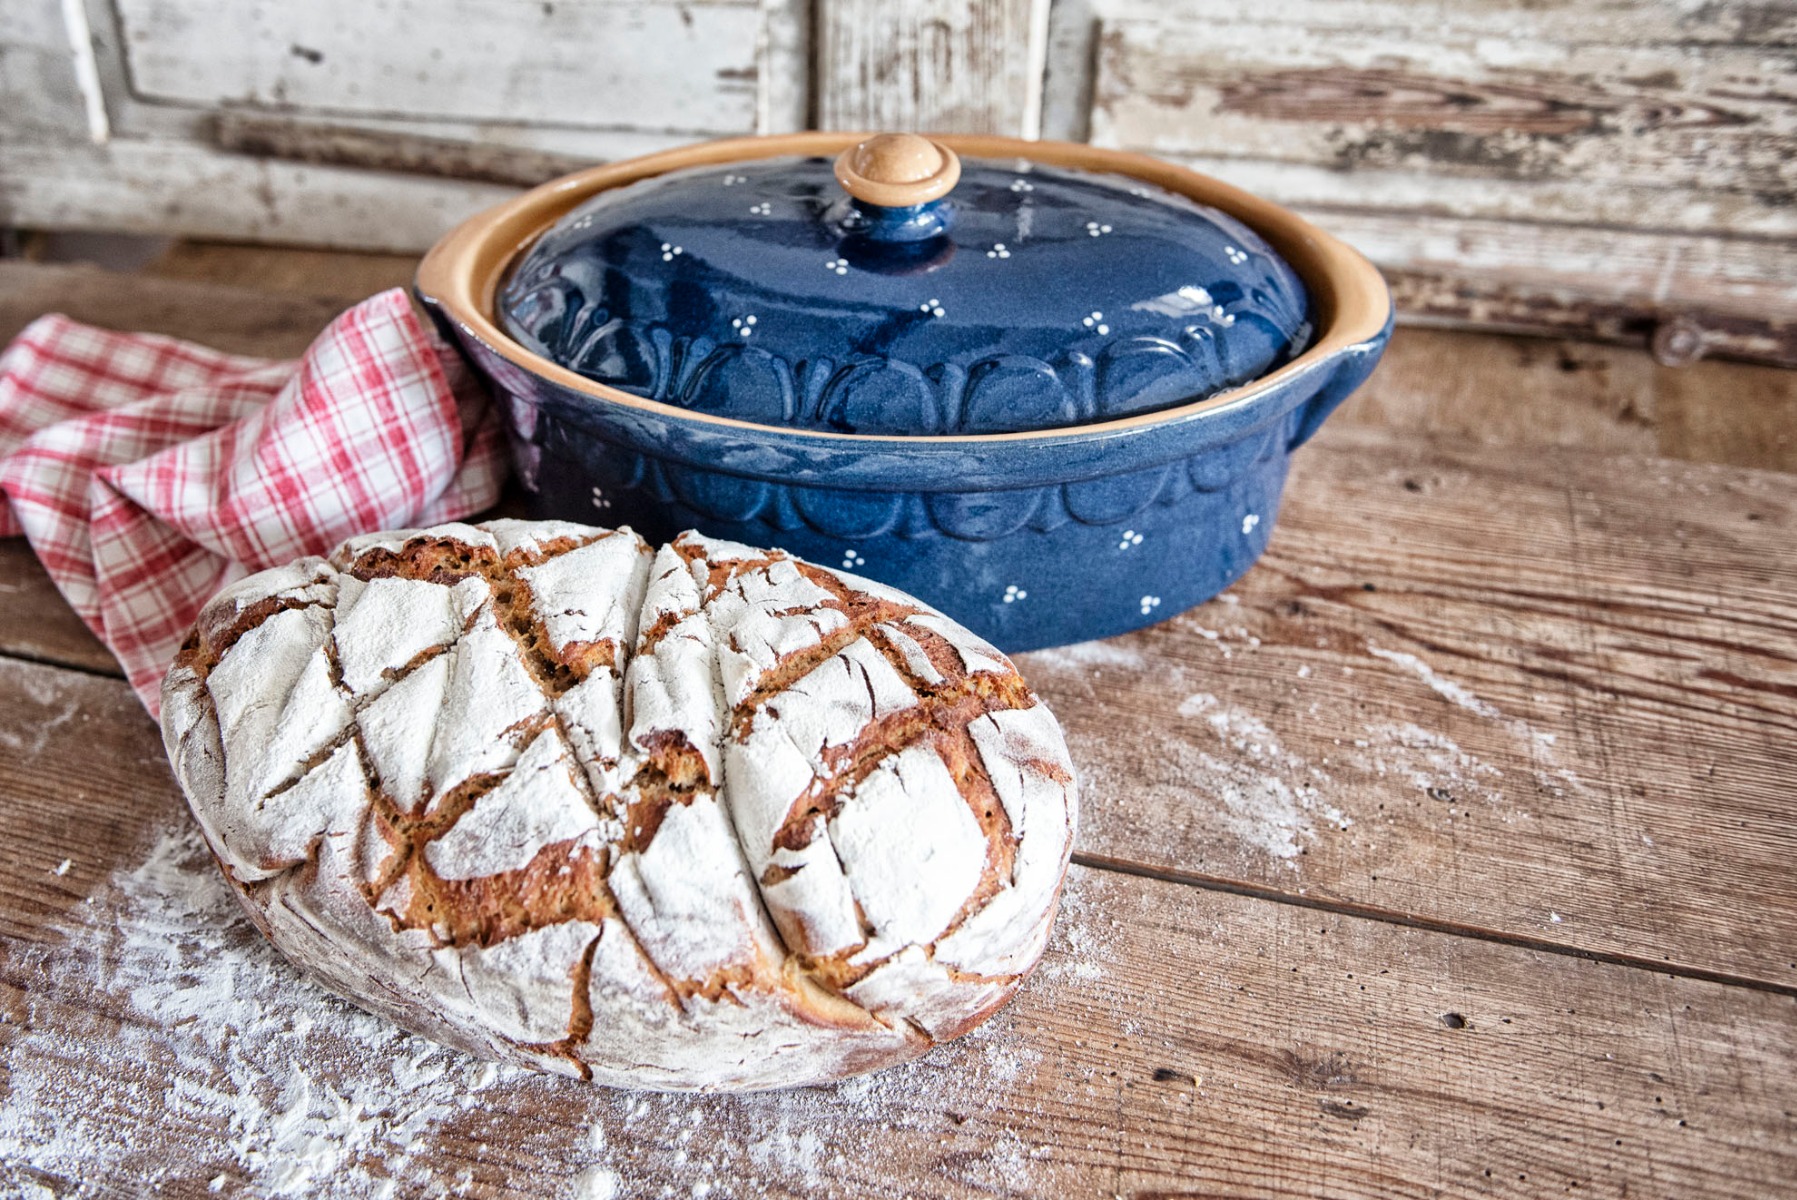 Unser Brotbacktopf aus Keramik ist zum Brotbacken in Holzbacköfen bestens geeignet. Der Elsässer Ton speichert optimal die Hitze und gibt sie gleichmäßig an den Brotteig ab. Das Ergebnis ist immer perfekt! 